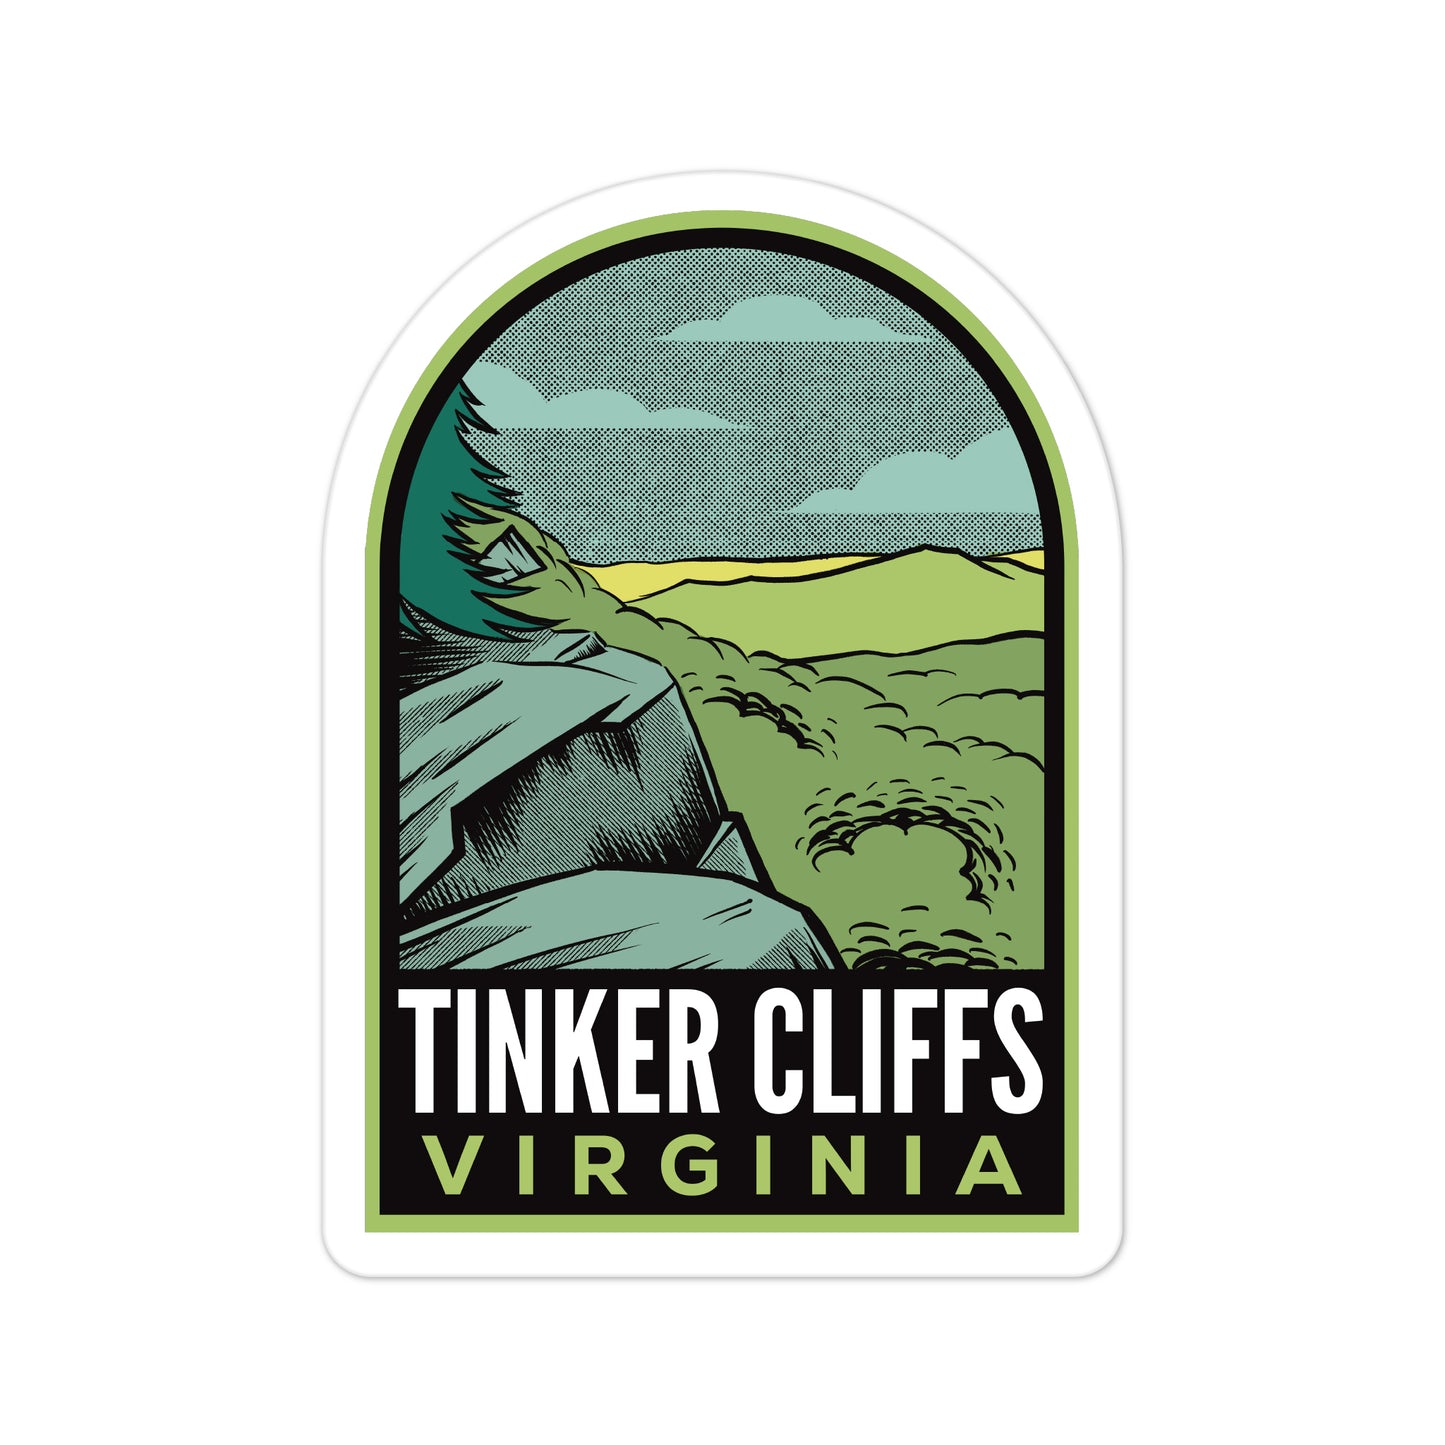 A sticker of Tinker Cliffs Virginia